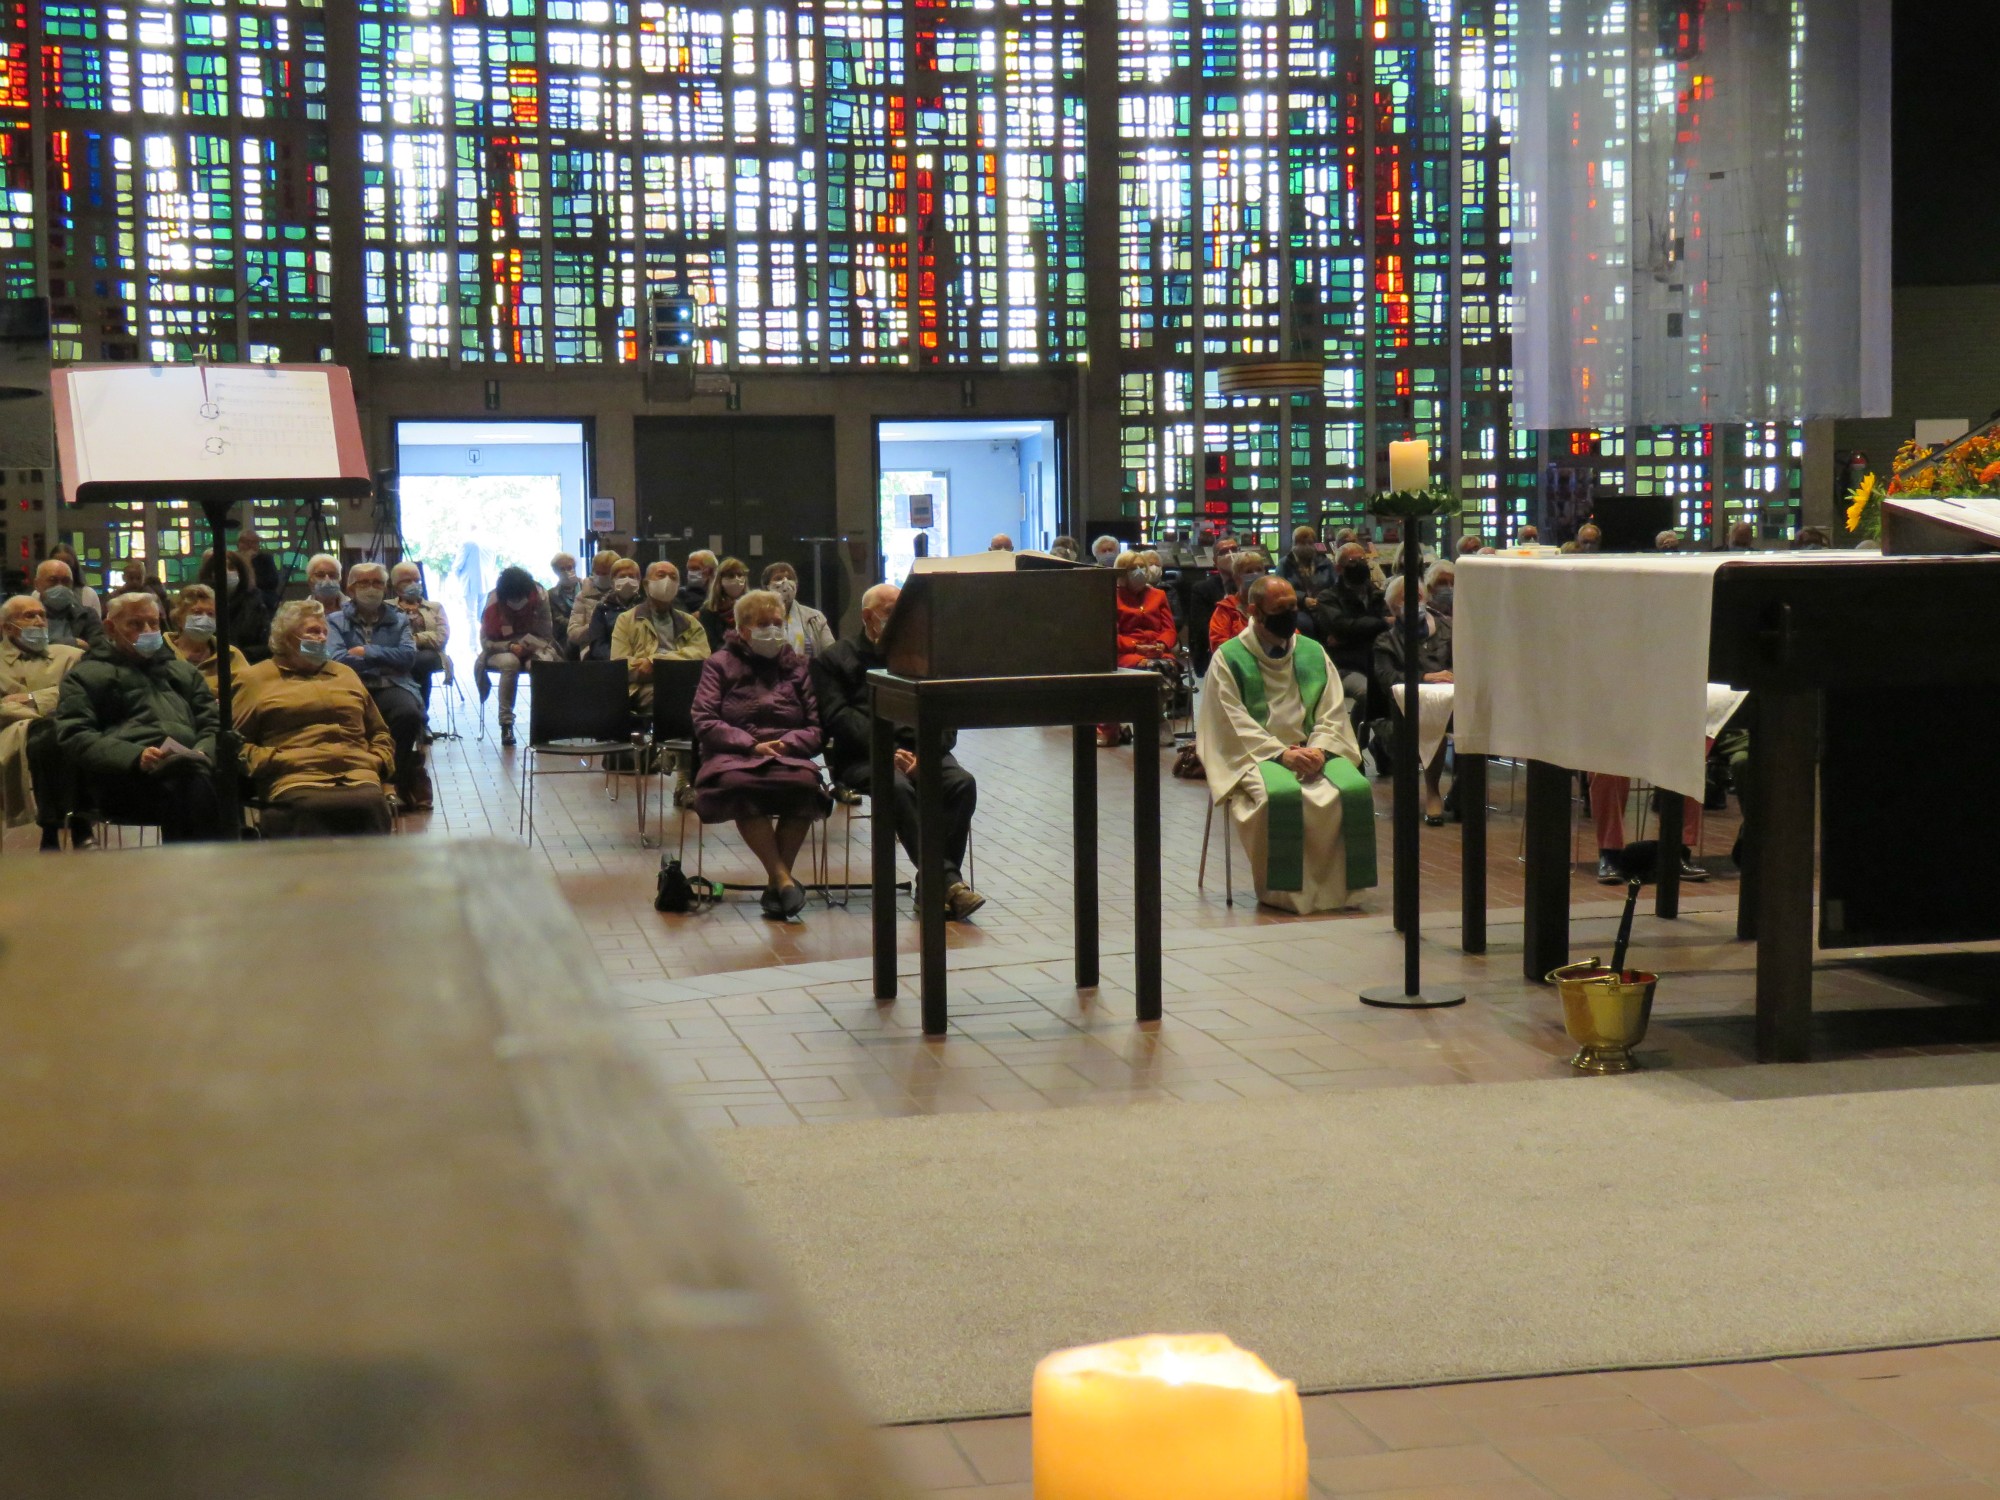 Afscheidsviering pastoor Herman Augustyns in de Sint-Anna-ten-Drieënkerk, Antwerpen Linkeroever